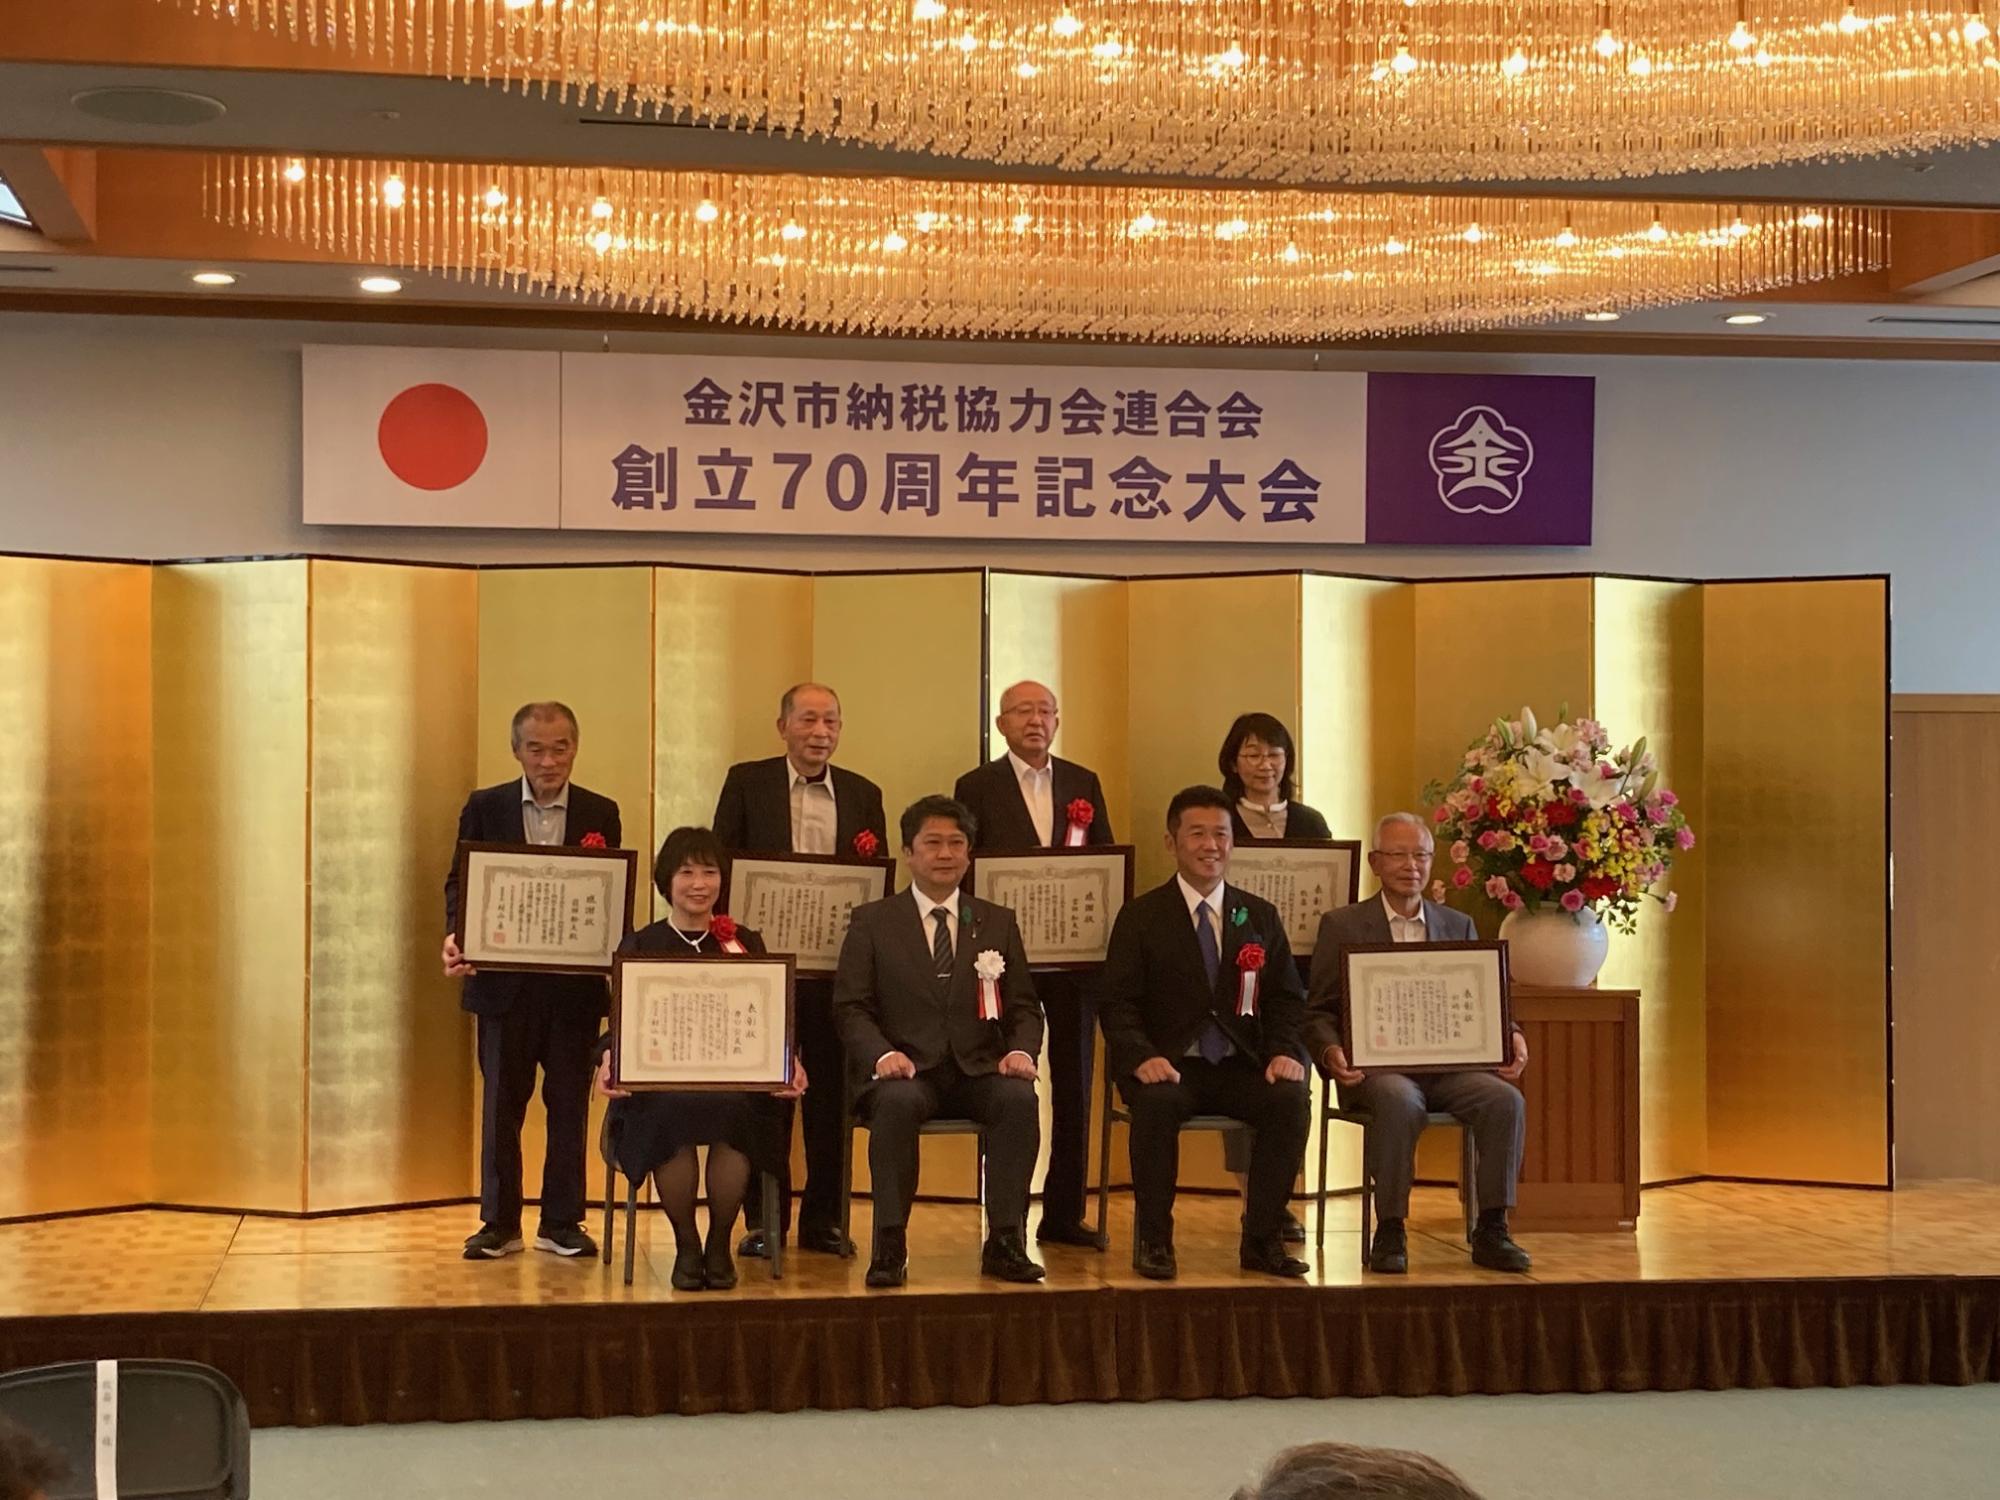 金沢市納税協力会連合会創立70周年記念大会の様子2